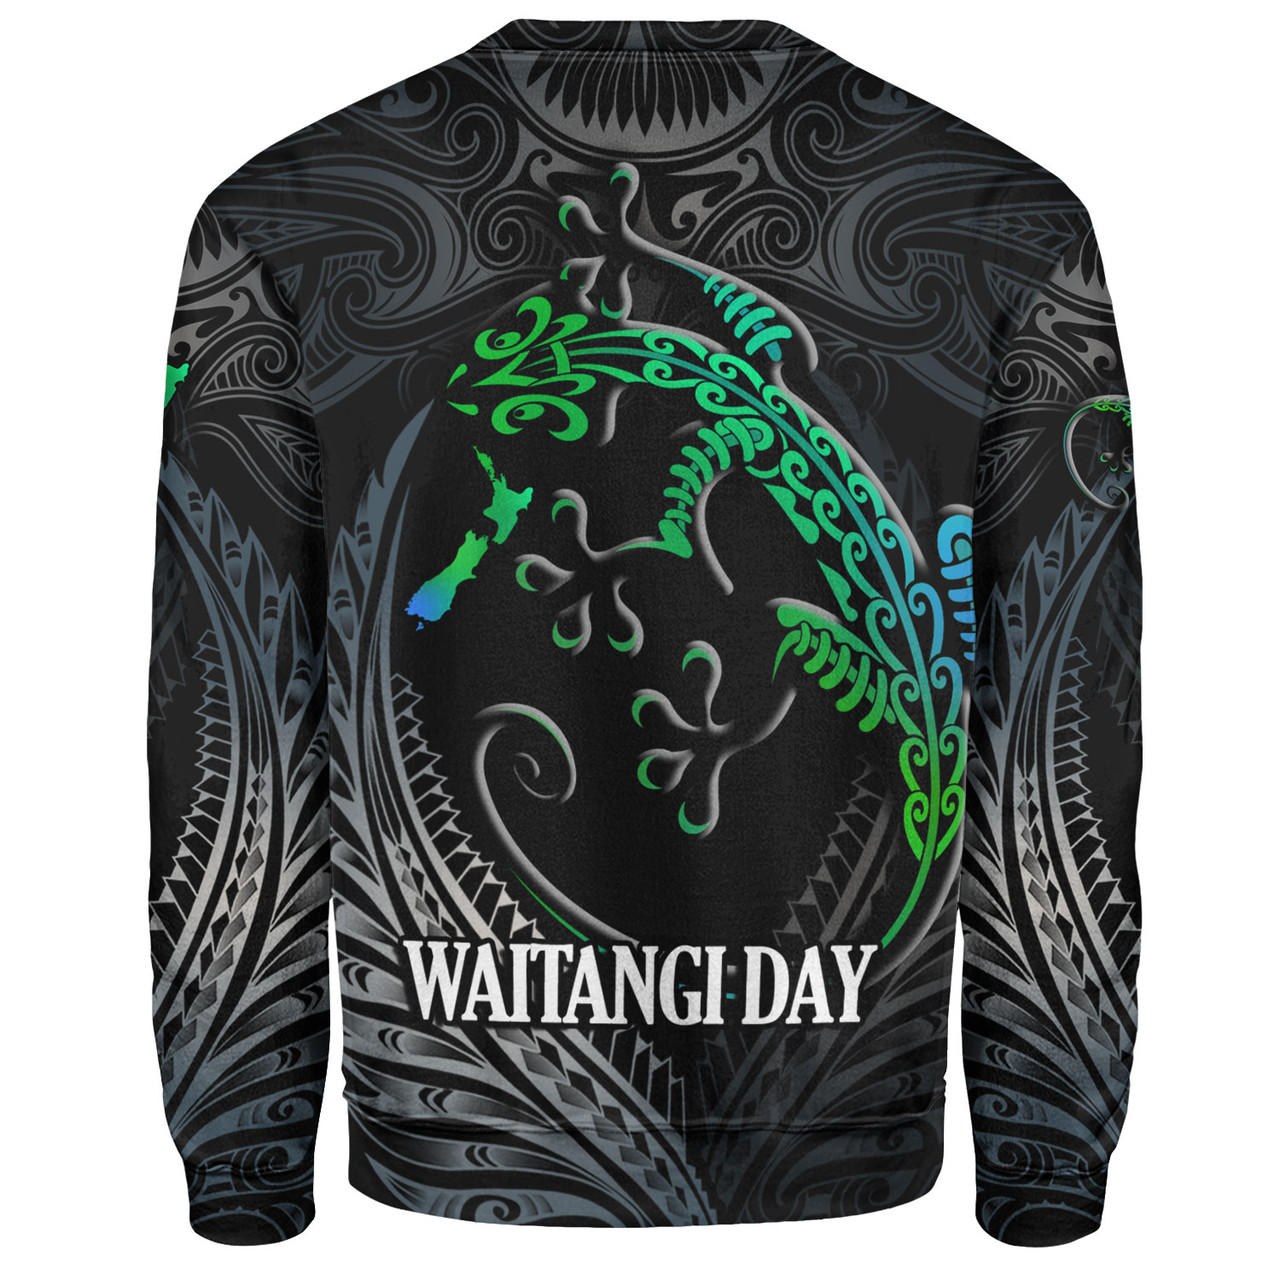 New Zealand Custom Personalised Sweatshirt Waitangi Day Ethnic Lizard Maori Patterns